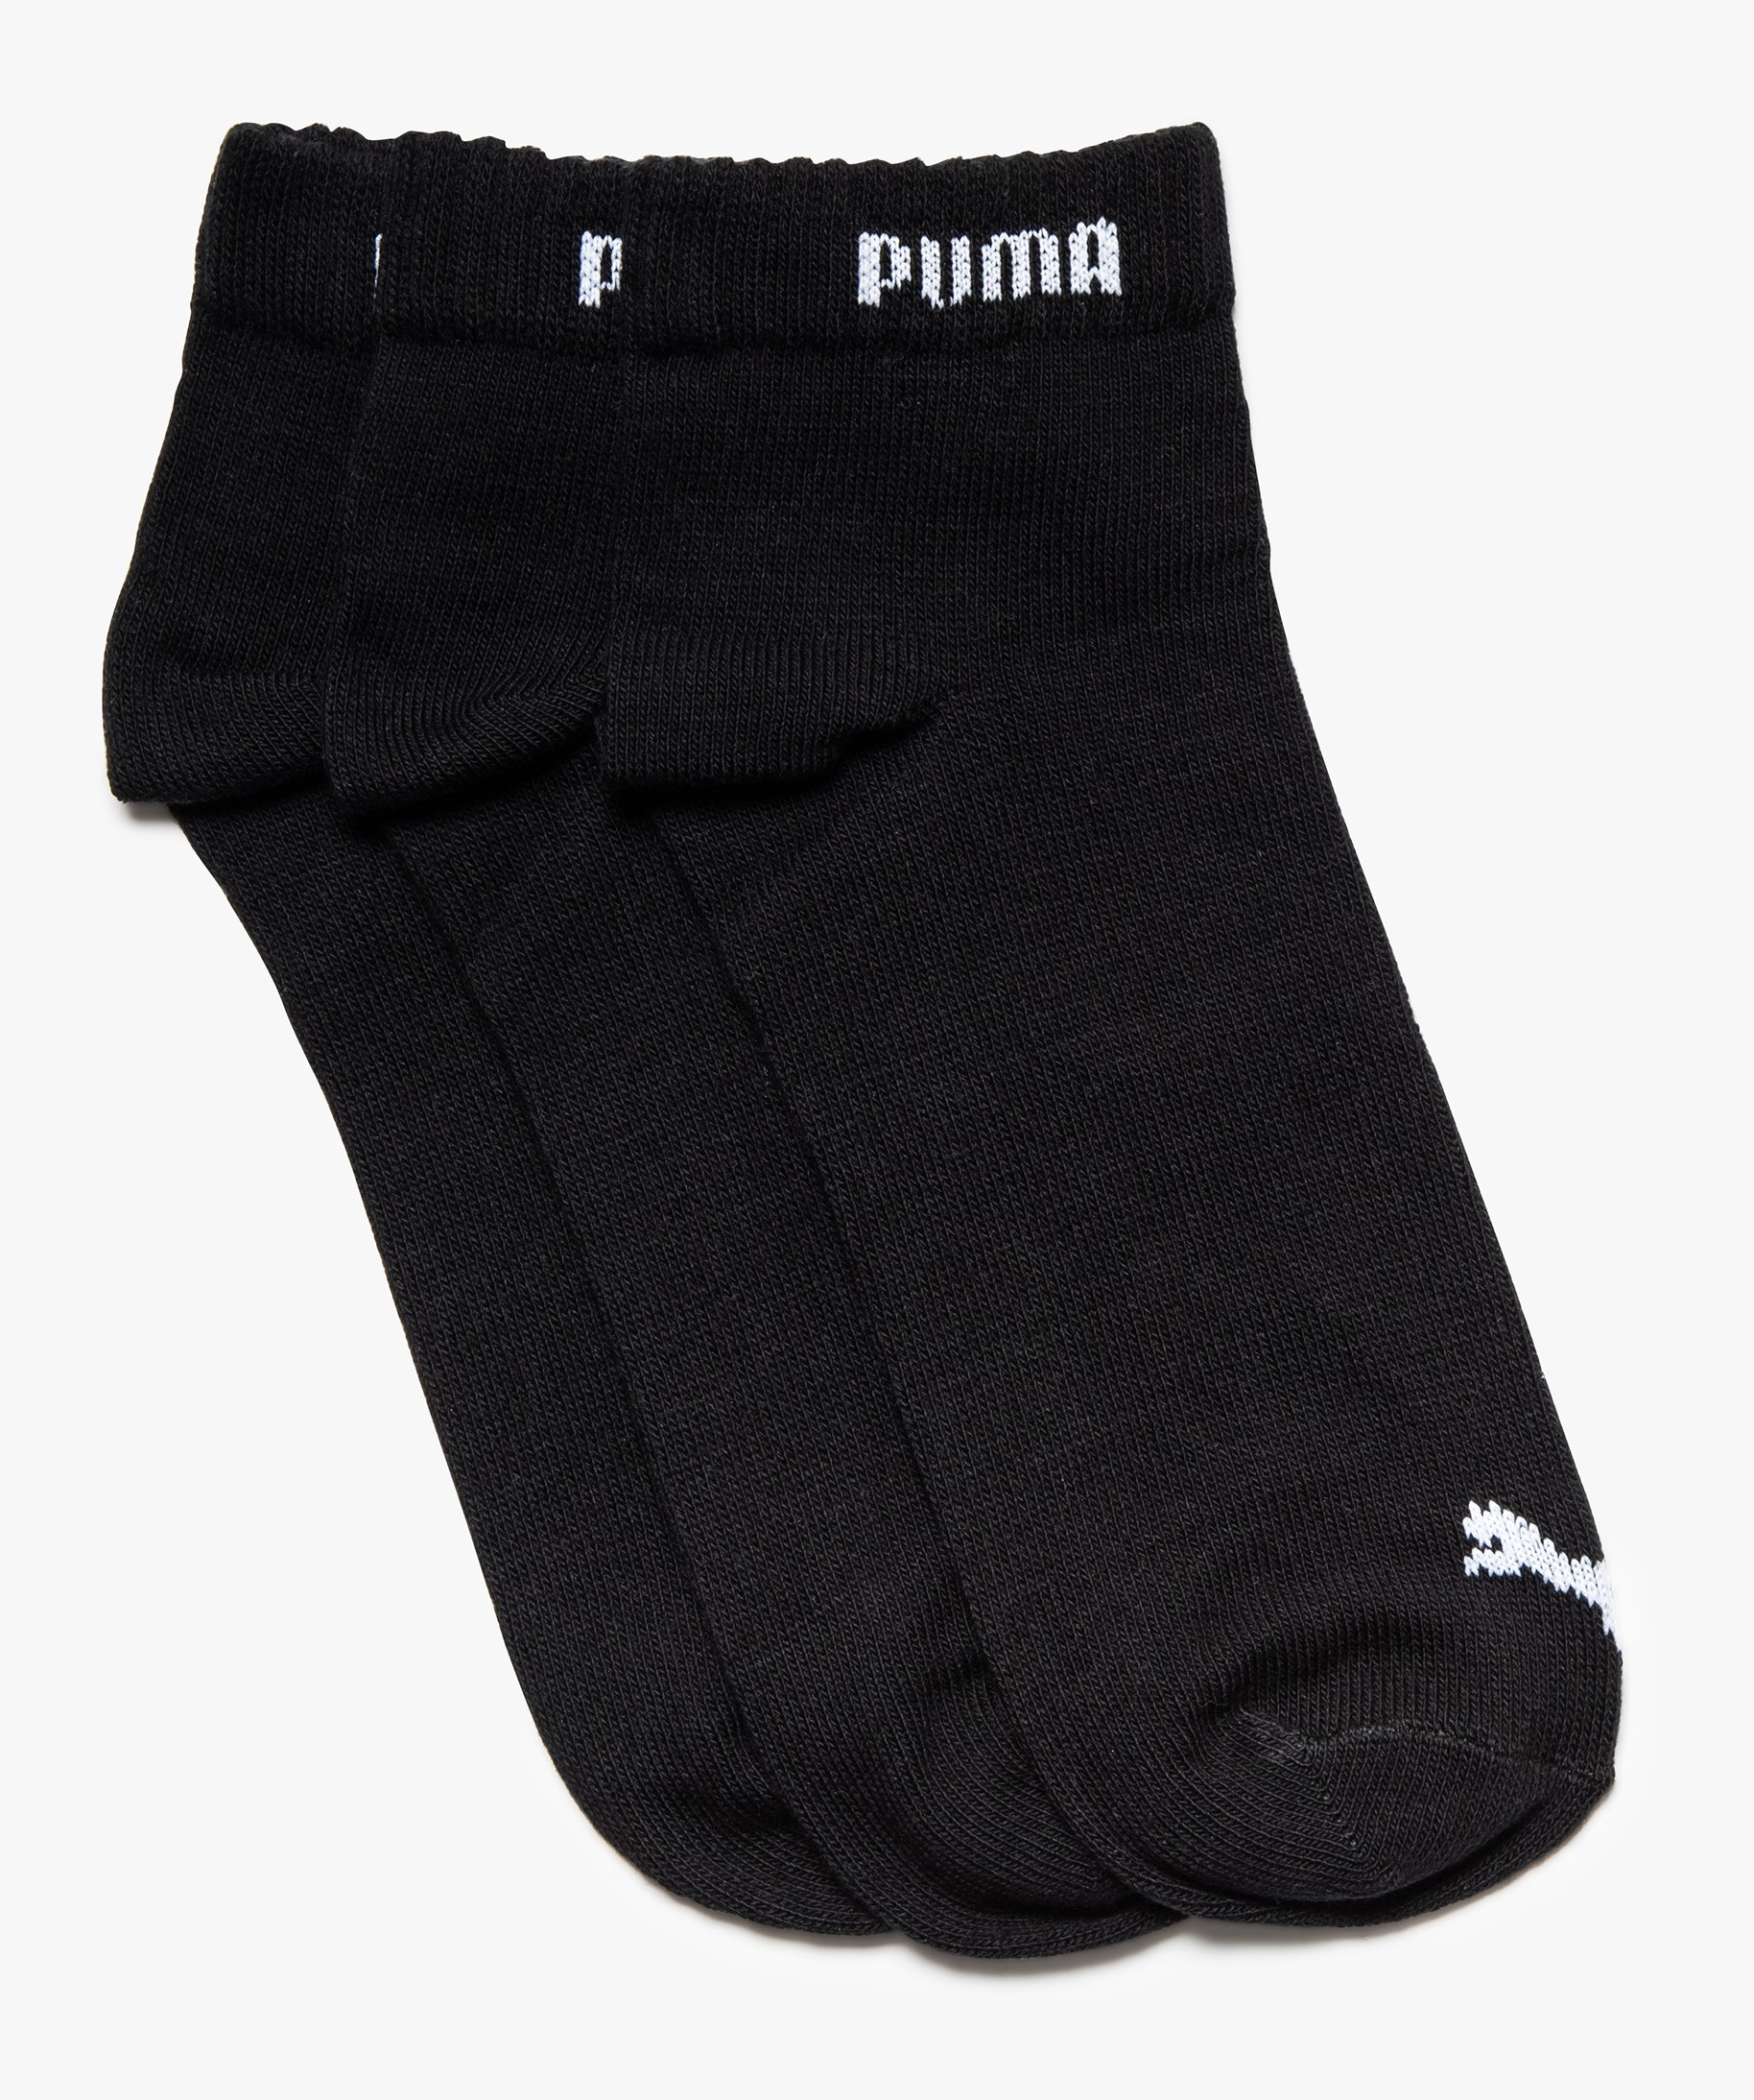 Puma Lot de 3 chaussettes noir grande taille